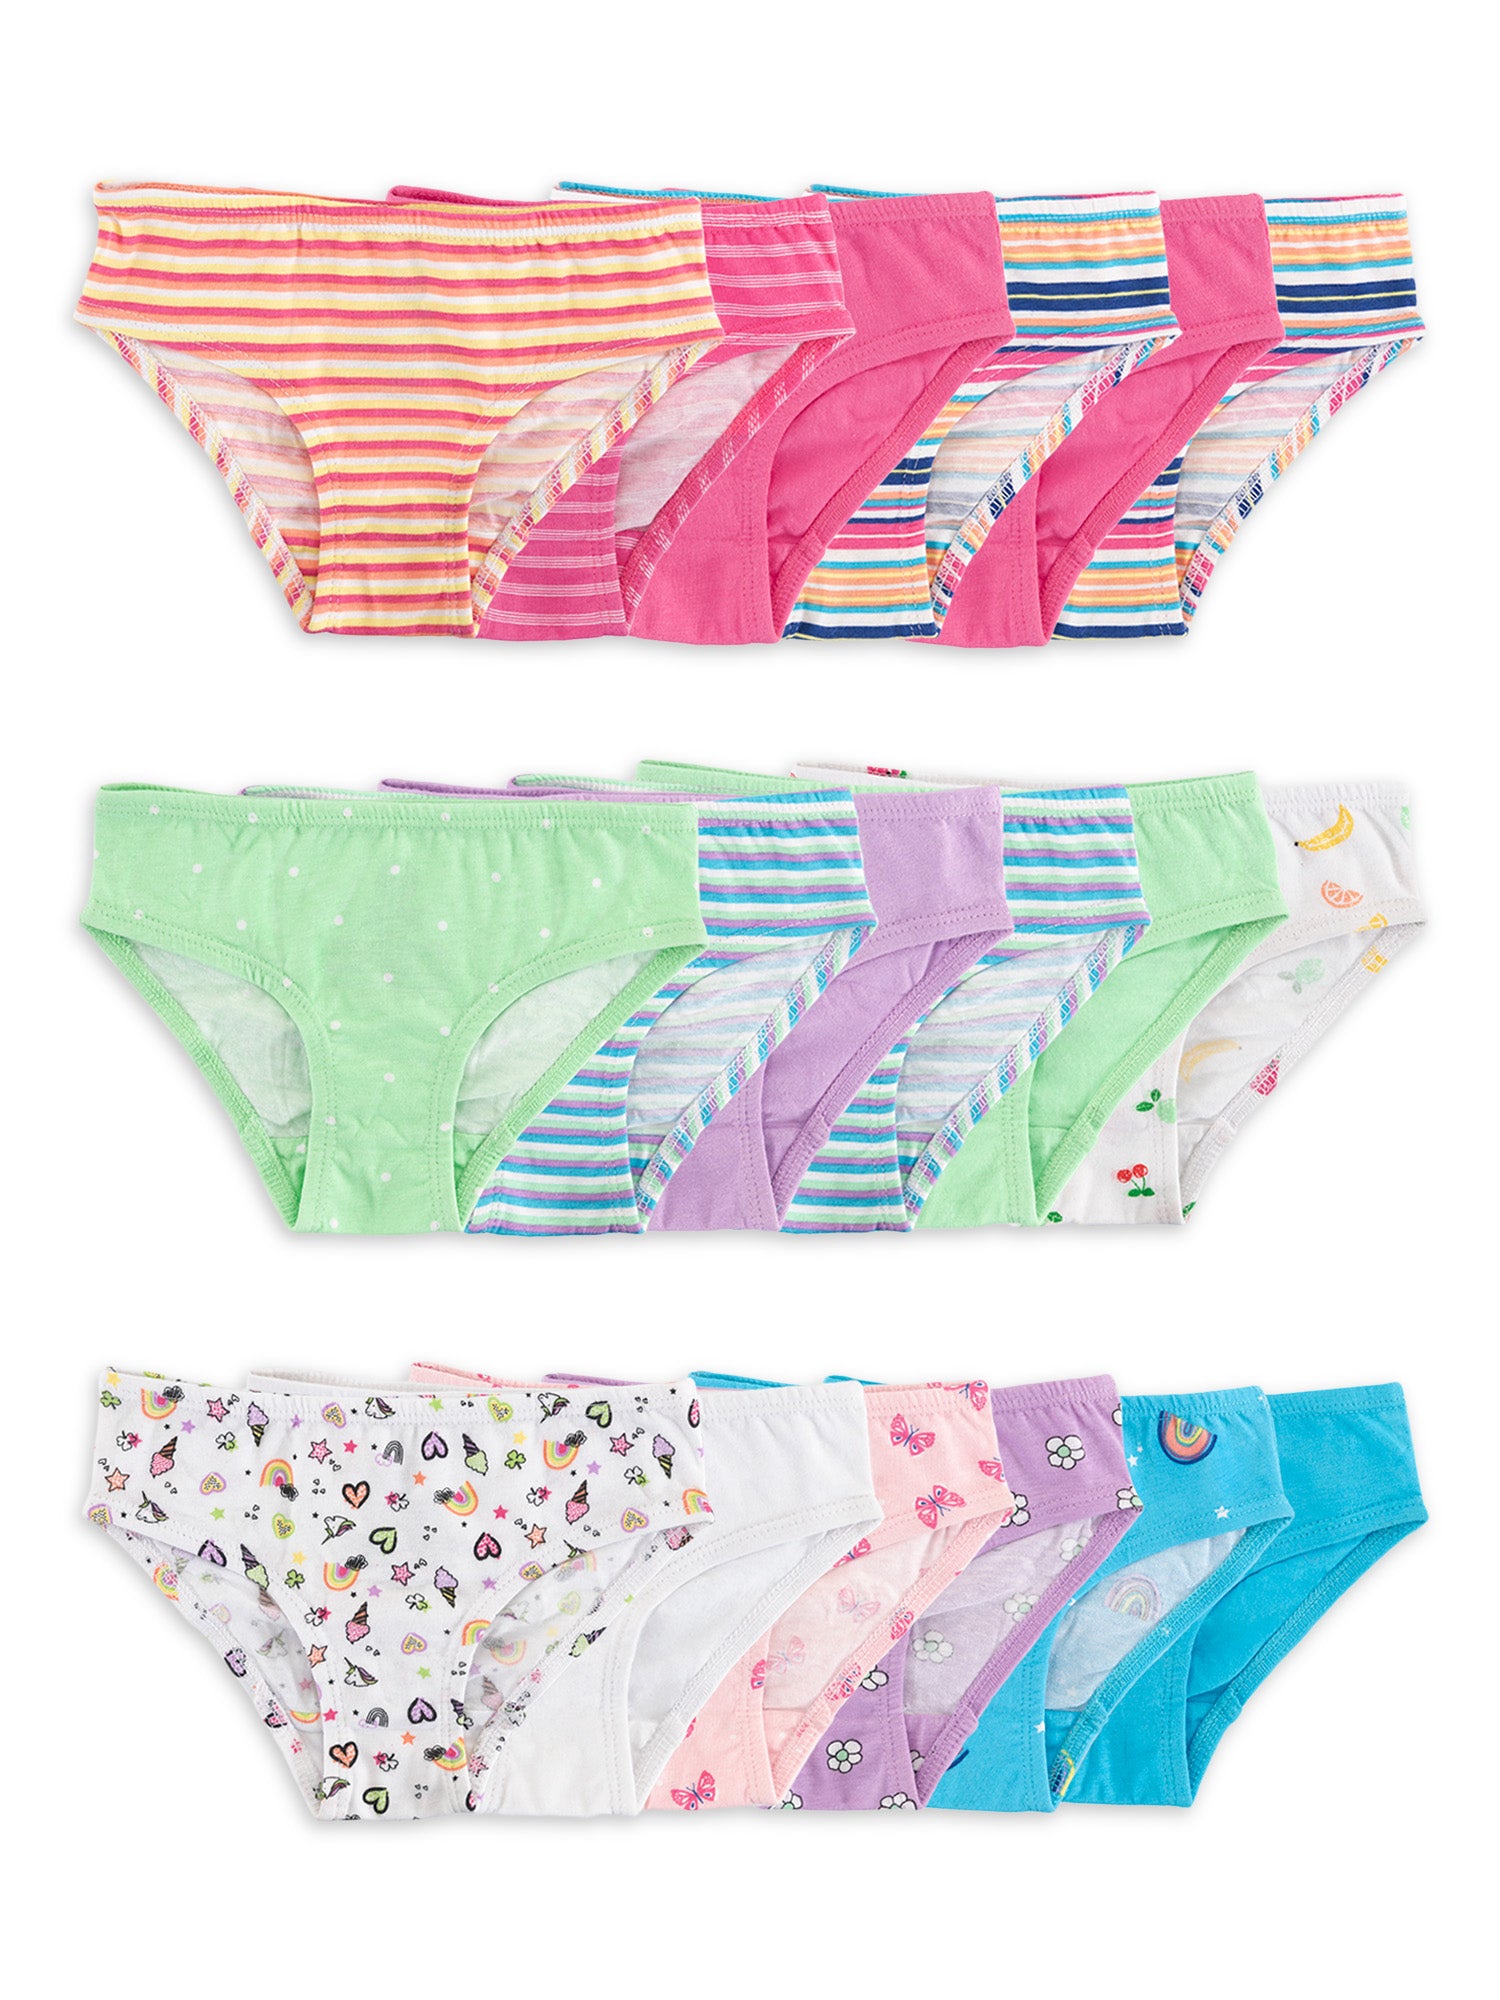 Wonder Nation Girls Briefs/ Underwear, 10-Pack, Assorted, Size 8